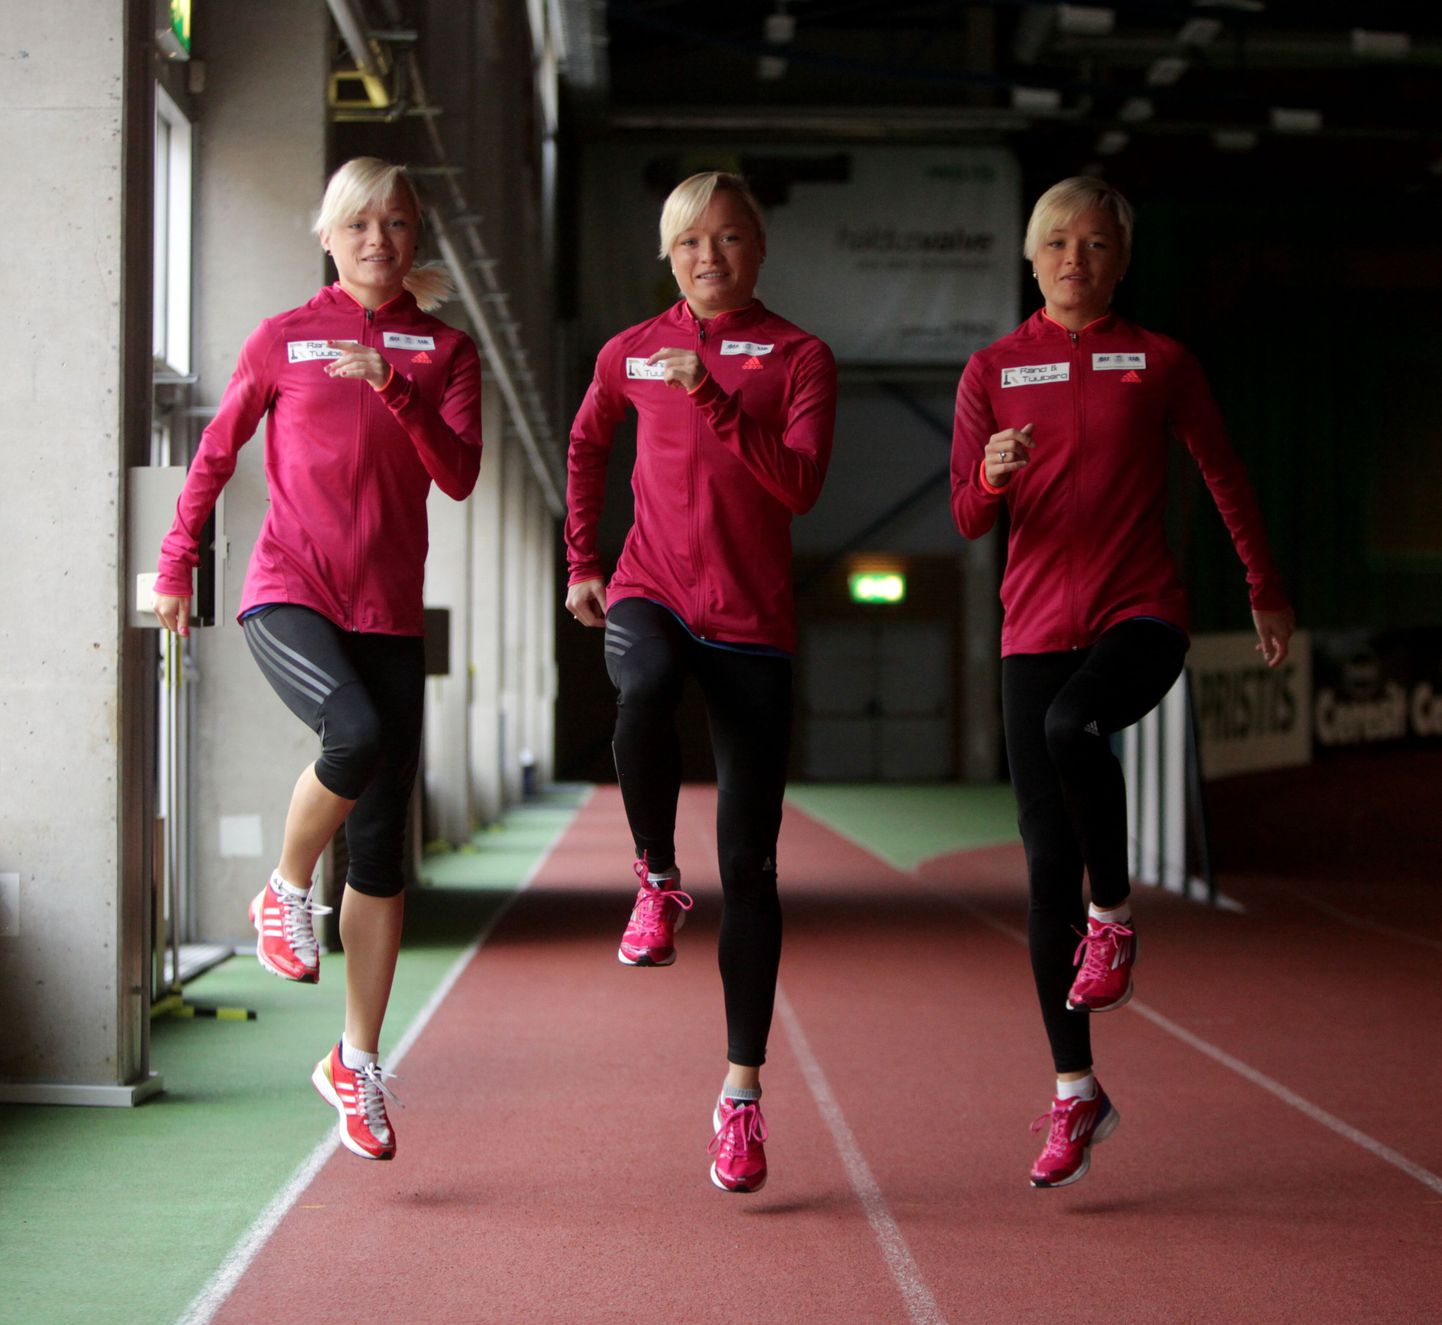 Jooksjatest kolmikõed Lily, Leila ja Liina Luik. Liina Luik täitis äsja maratonis MM-normi, norm on täidetud ka Leilal.